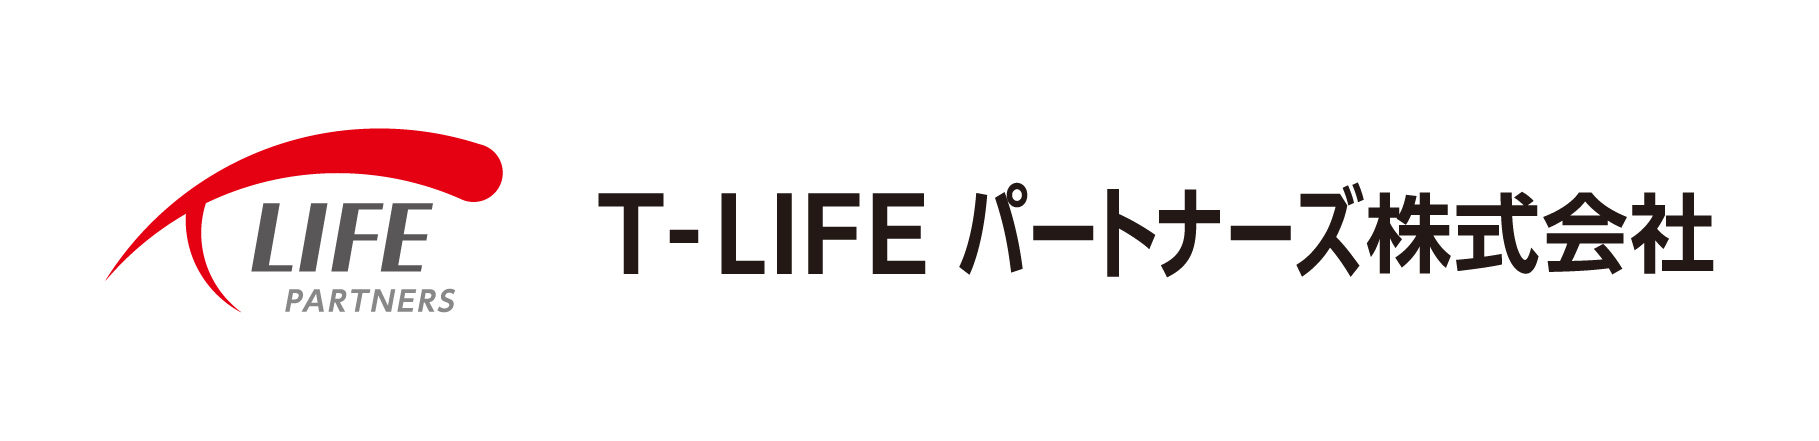 T-LIFE パートナーズ株式会社